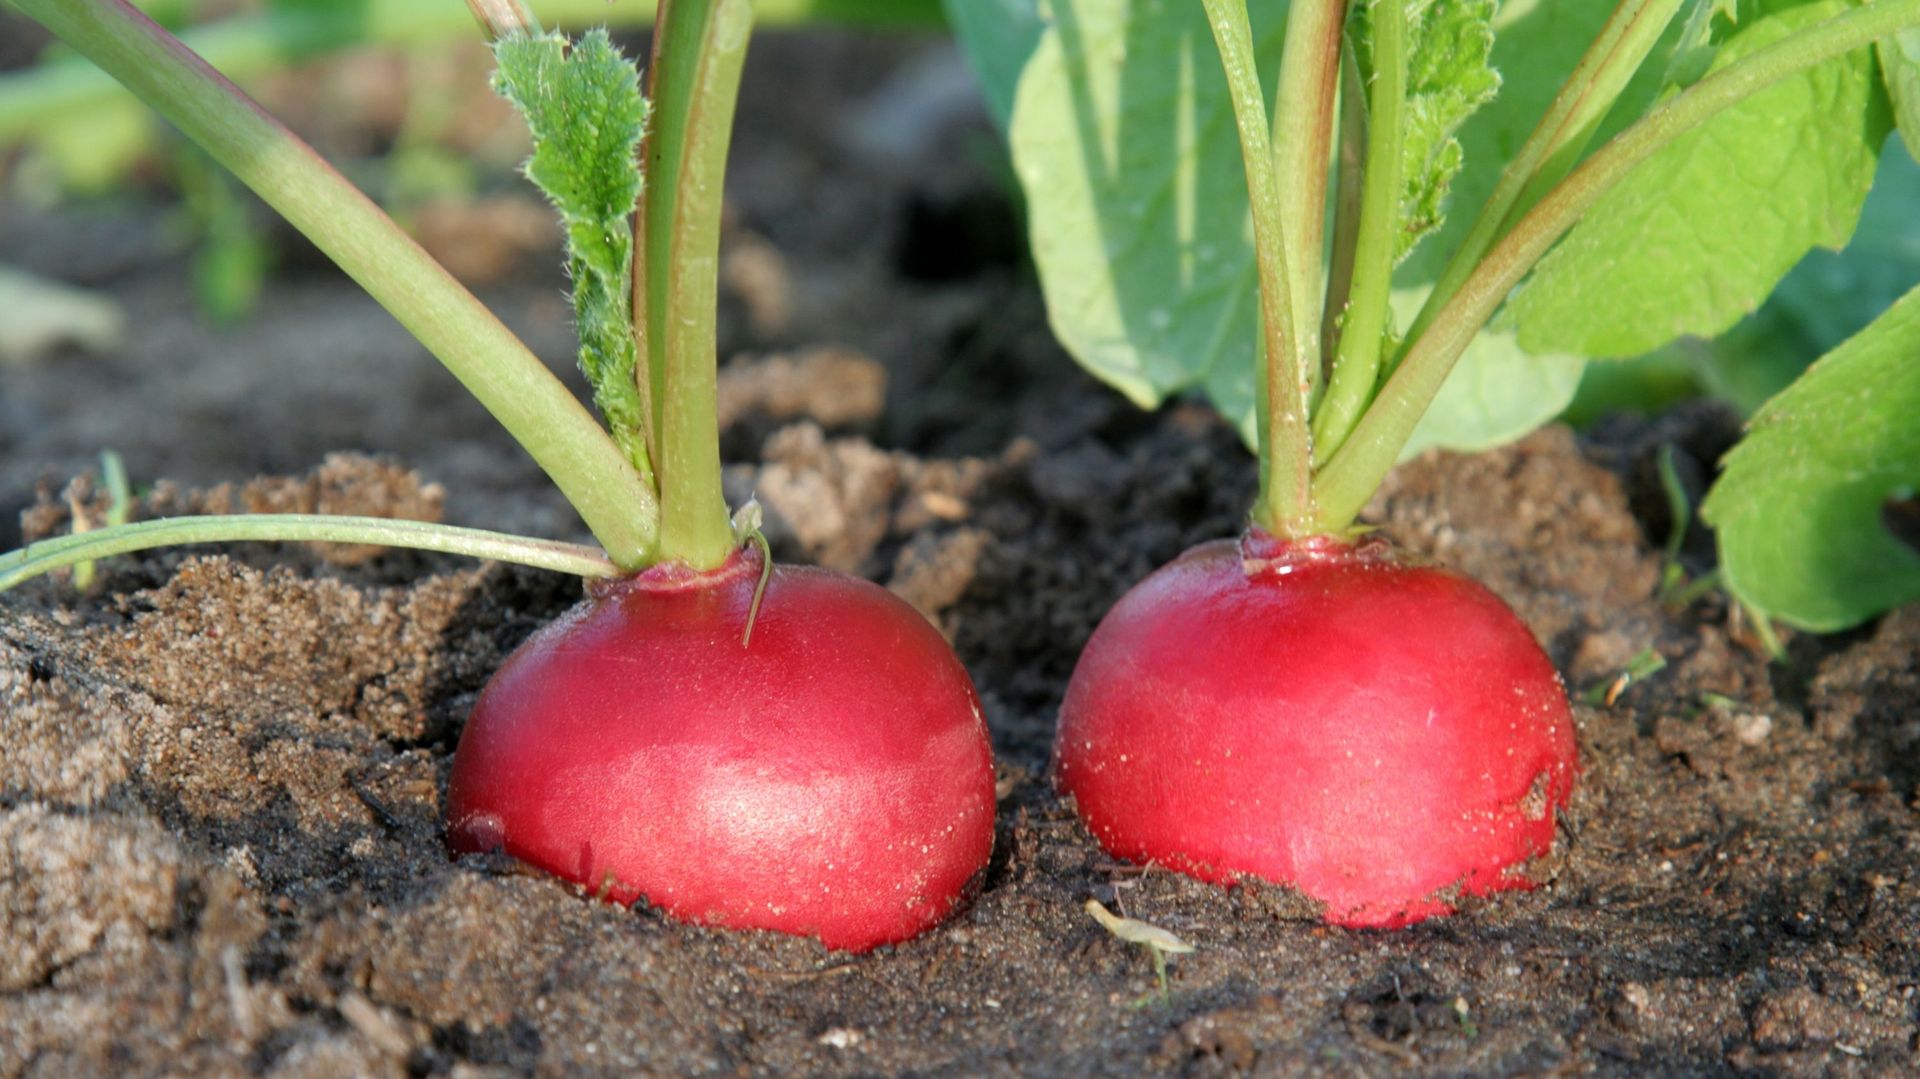 Les radis se crevassent quand ils vieillissent. L'idéal est de semer peu, mais souvent. Un semis d'une pincée de graines chaque semaine ou tous les 15 jours permet de toujours récolter des radis bien frais. Une bonne variété : 'Flamboyant'.